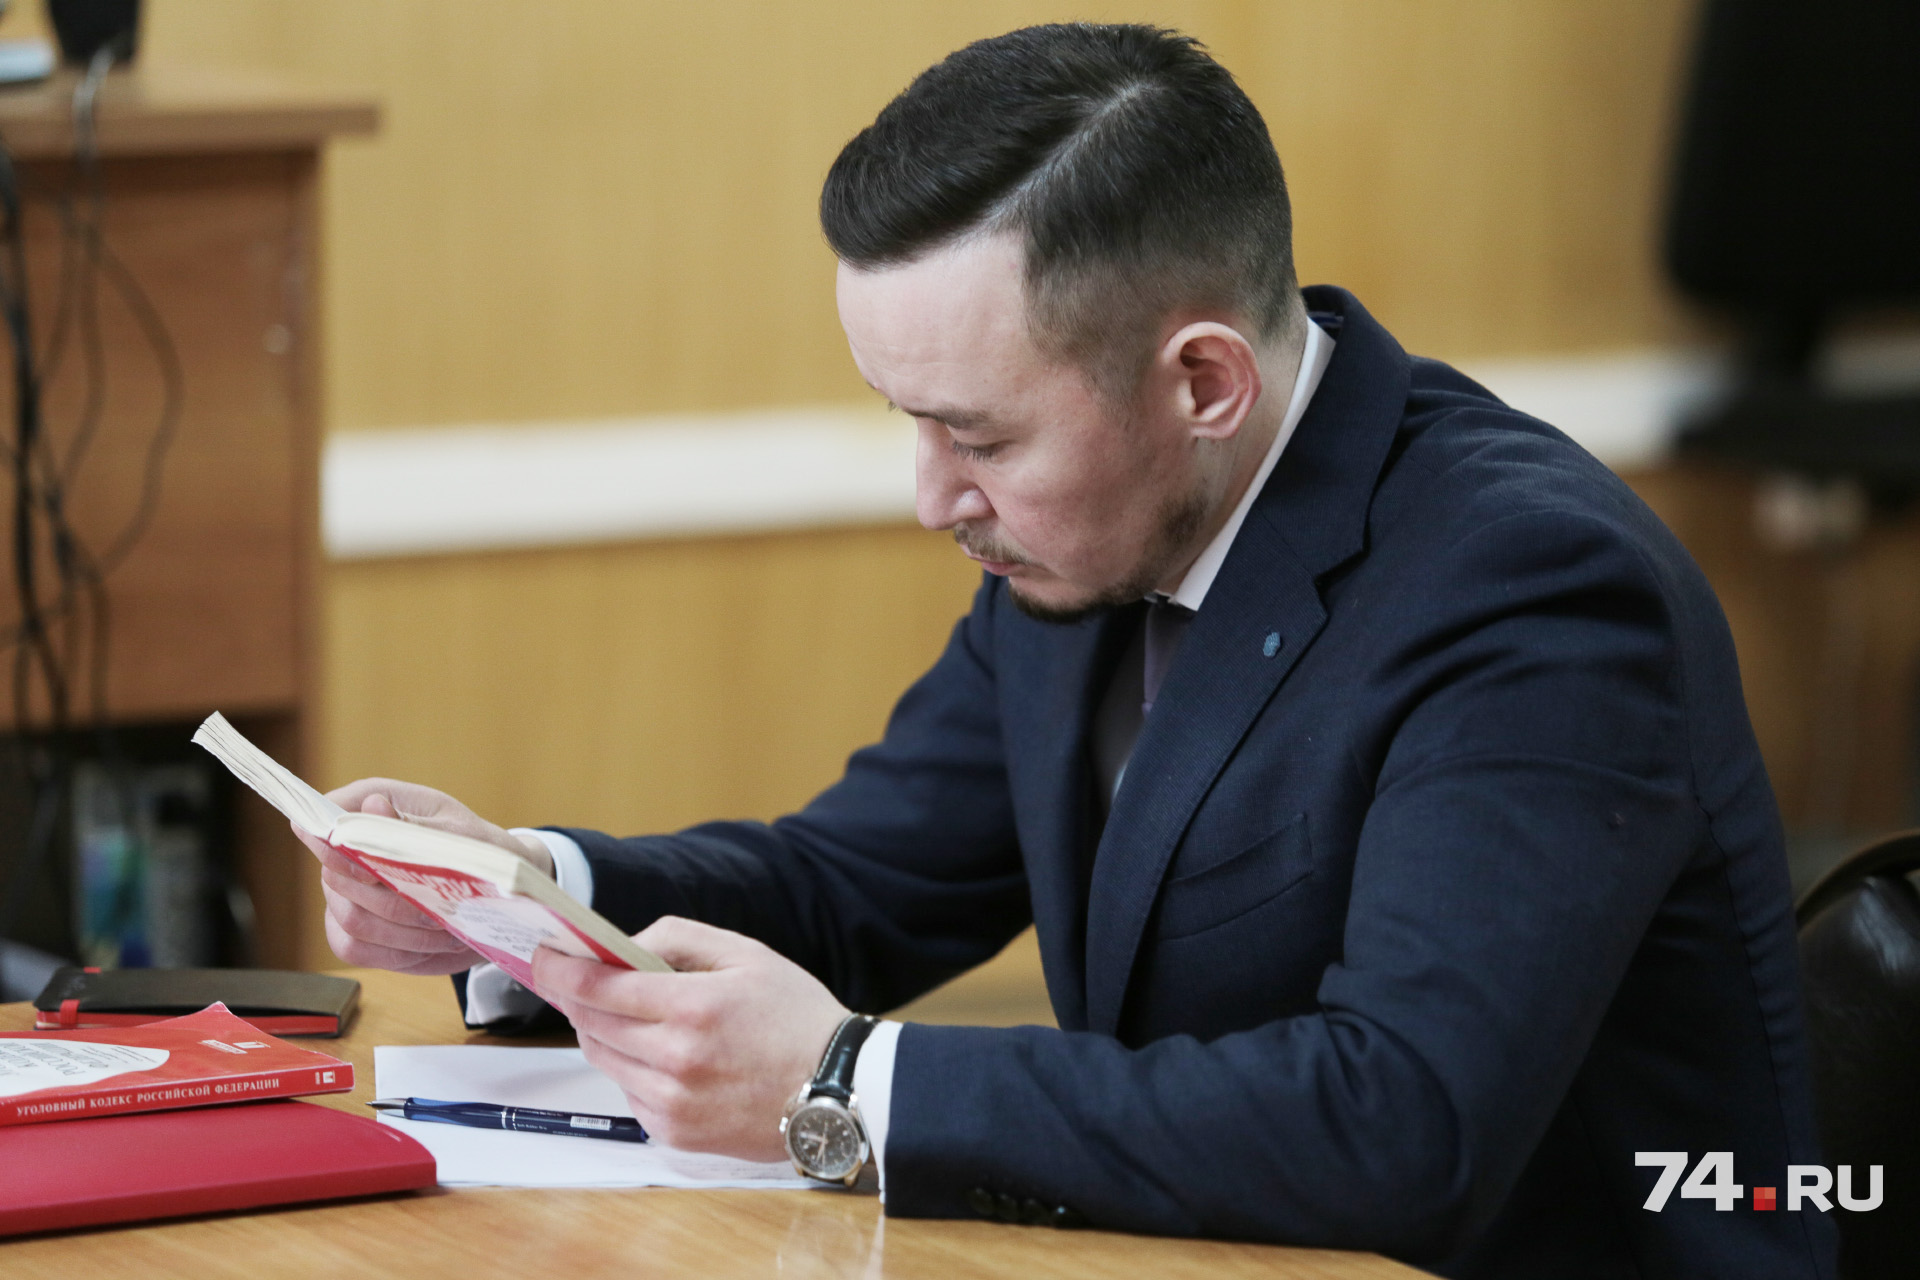 Адвокат нападавшего Артур Саитов будет настаивать на участии музыканта в судебных заседаниях